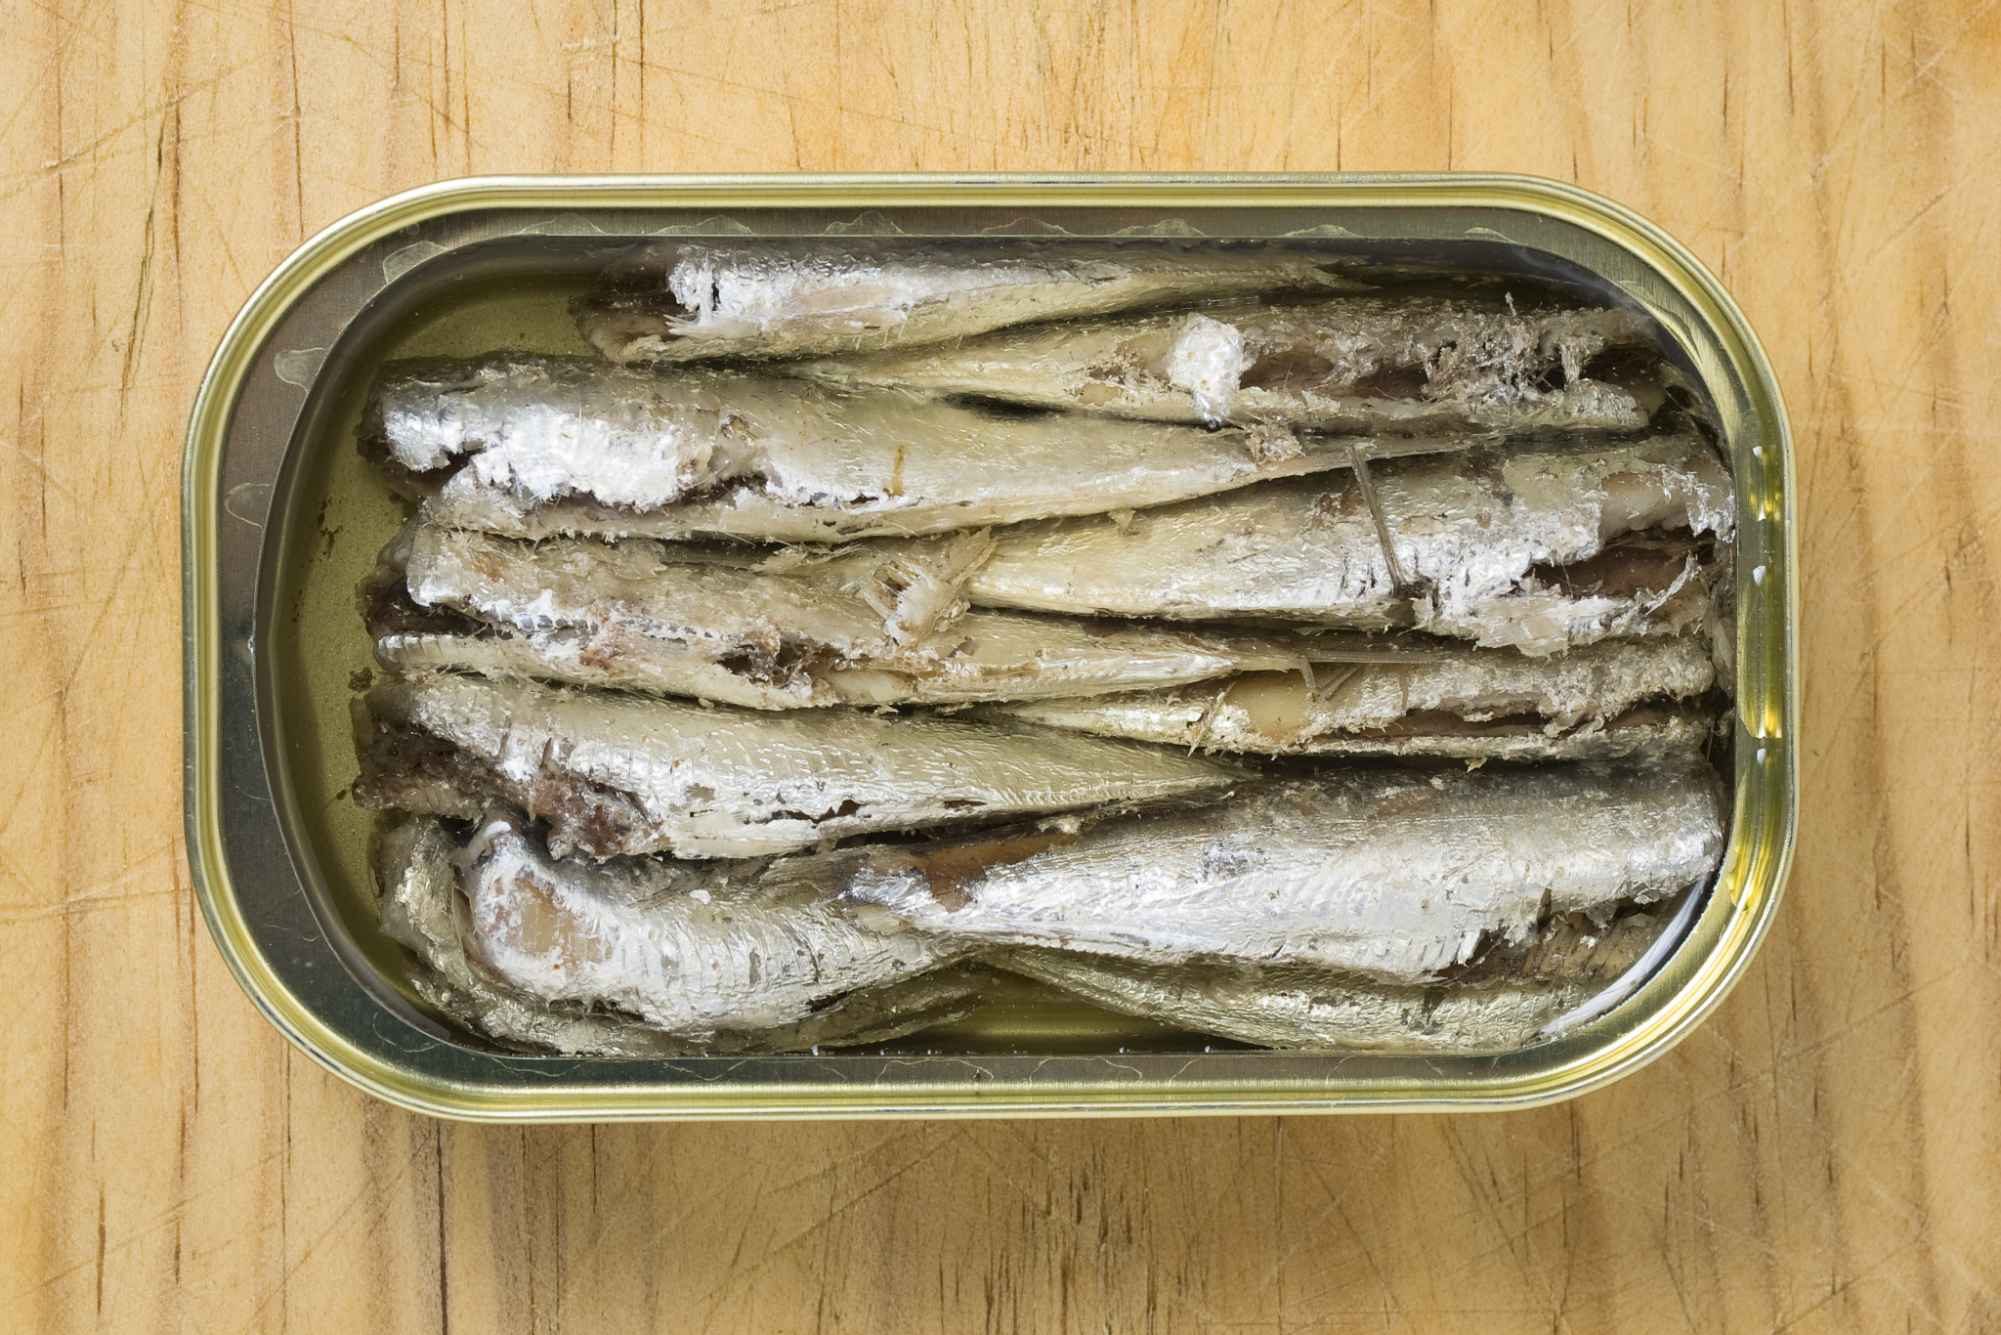  هل تونة المعلبة ترفع الكوليسترول وماهي فوائد تونة السمك 